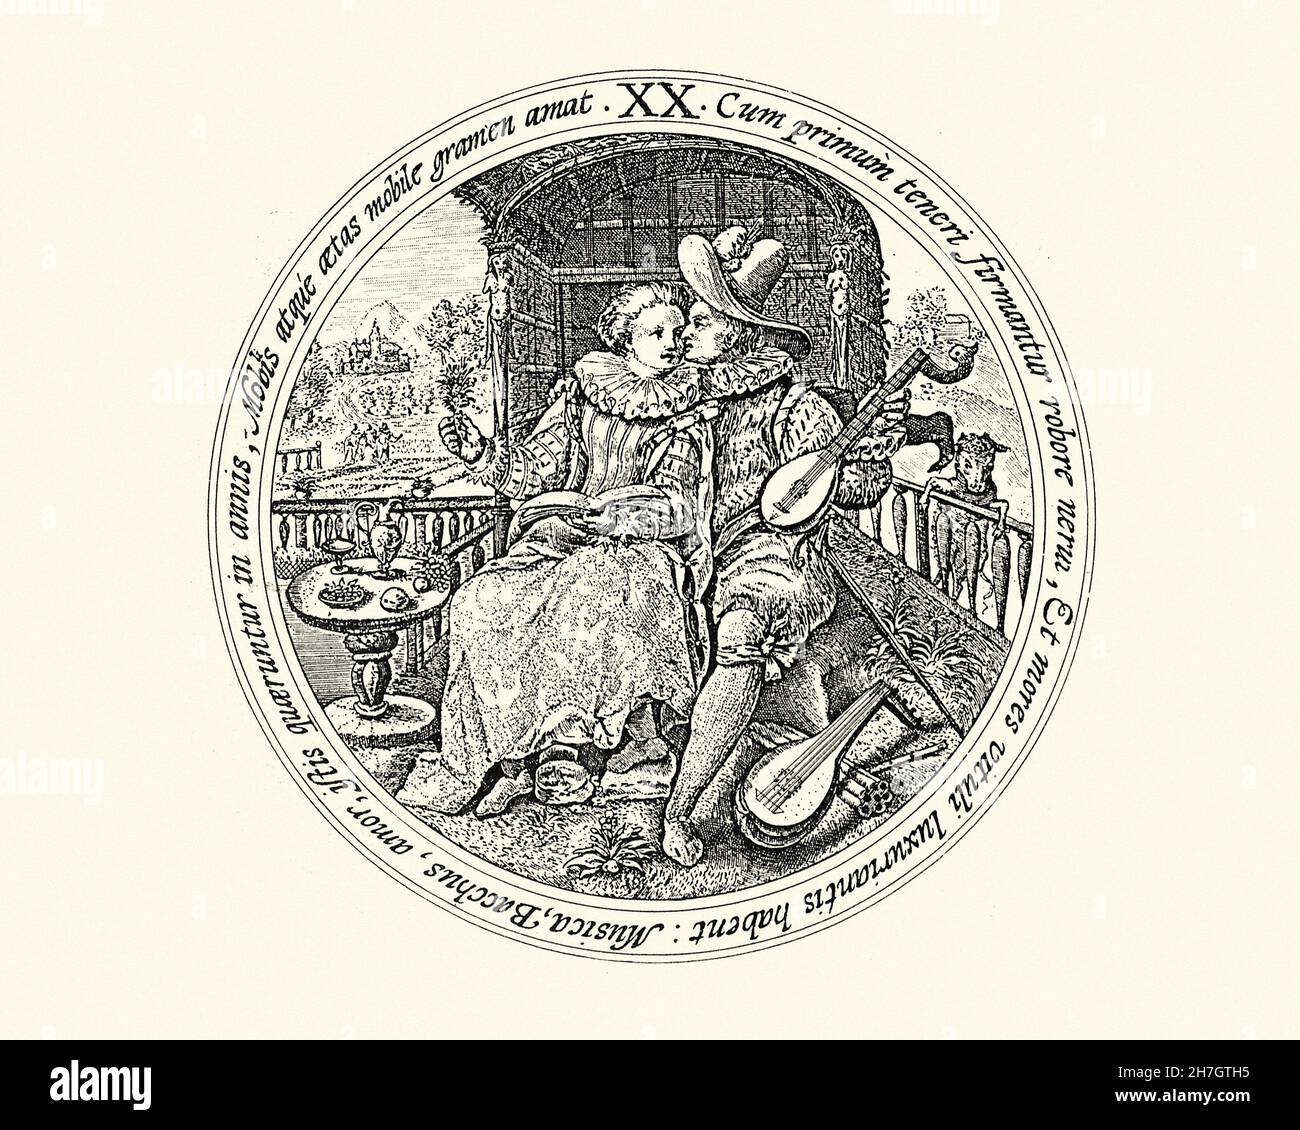 Musique et Bacchus, les alliés de la séduction, gravure hollandaise, XVIIe siècle Banque D'Images